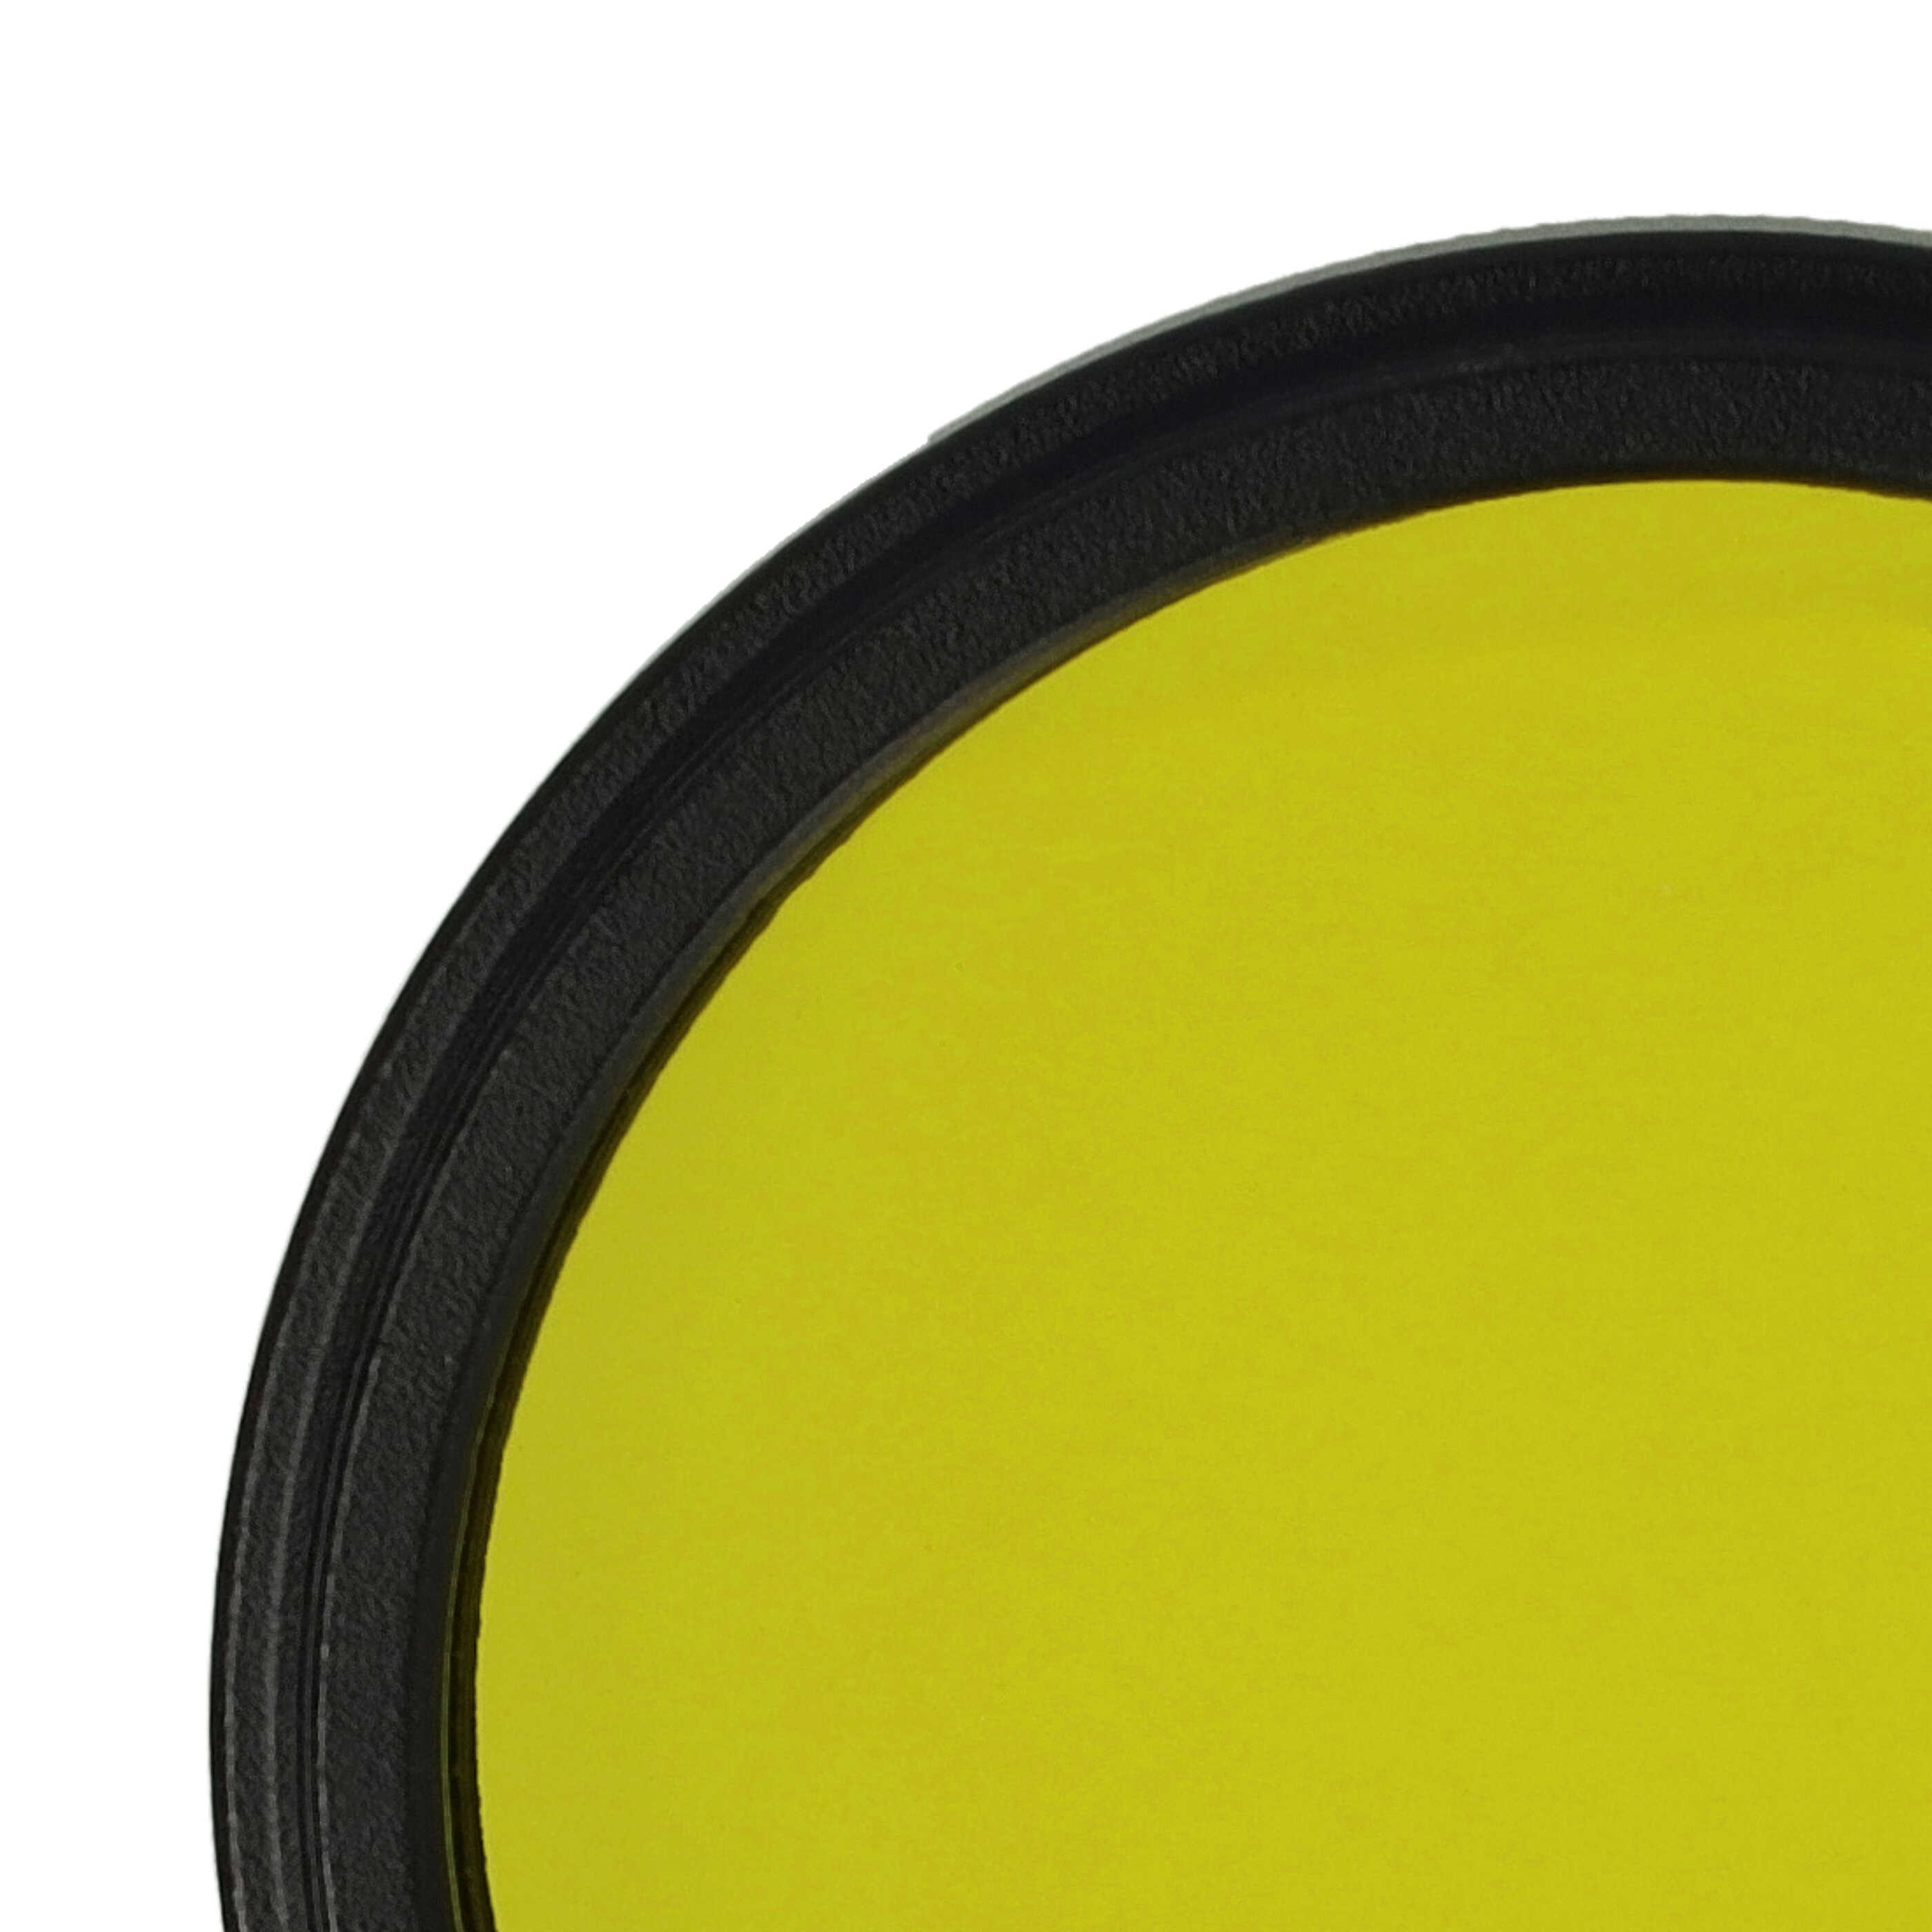 Filtr fotograficzny na obiektywy z gwintem 40,5 mm - filtr żółty